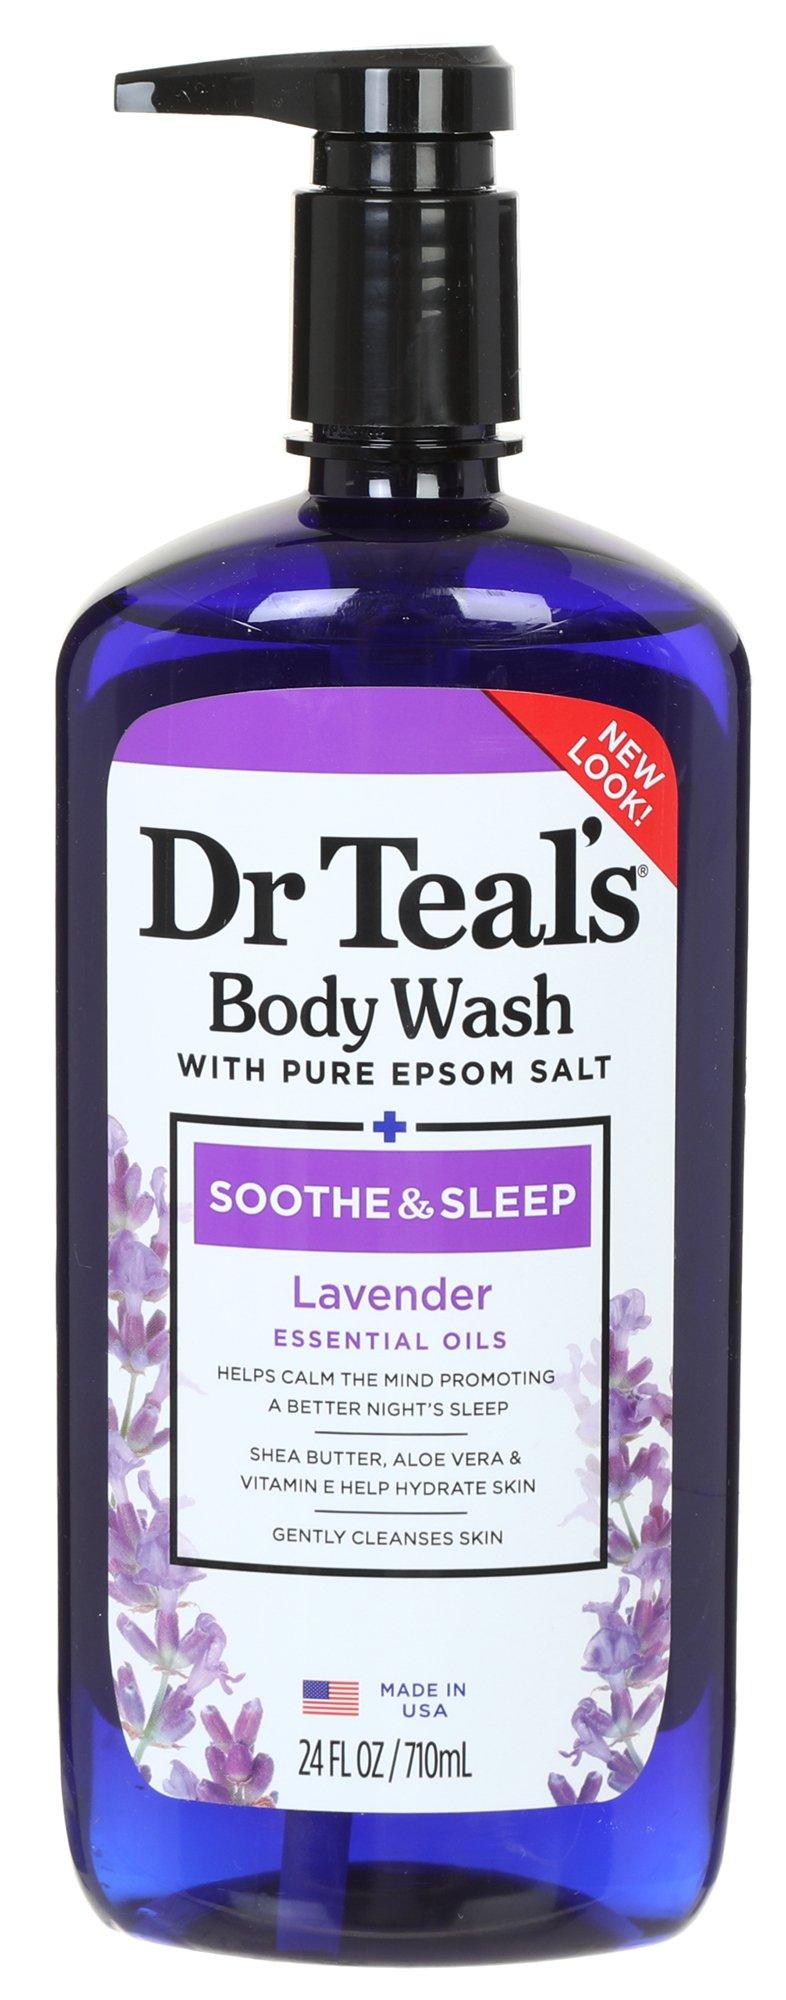 Sooth & Sleep Lavender Bath Wash 24 fl. oz.